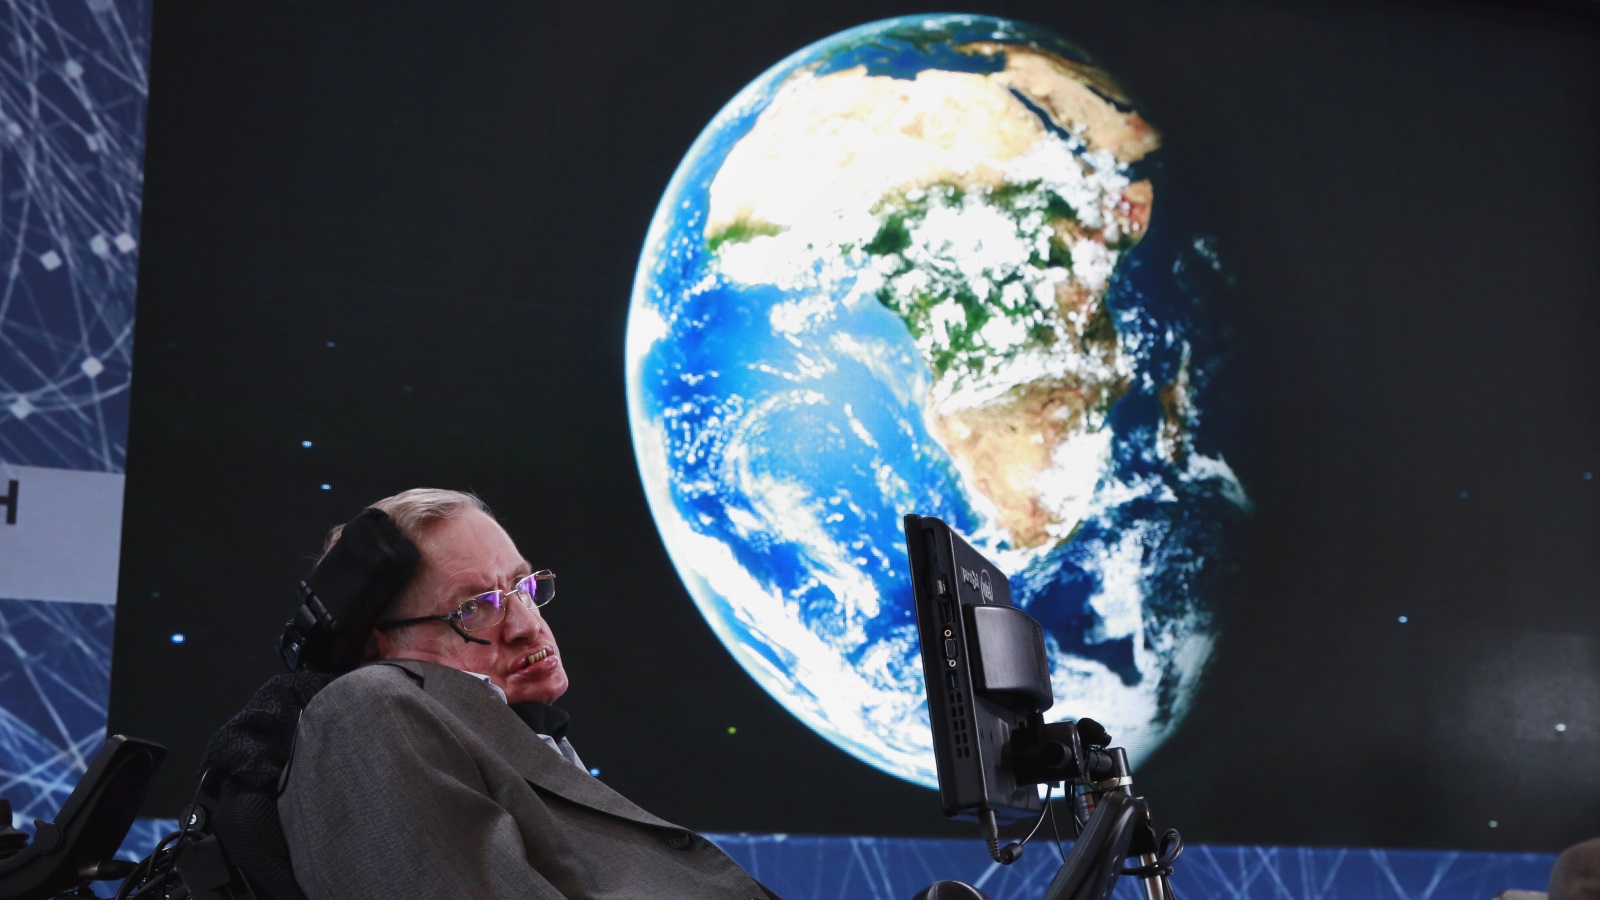 ستيفن هوكينج أبرز علماء الفيزياء النظرية على مستوى العالم (رويترز)